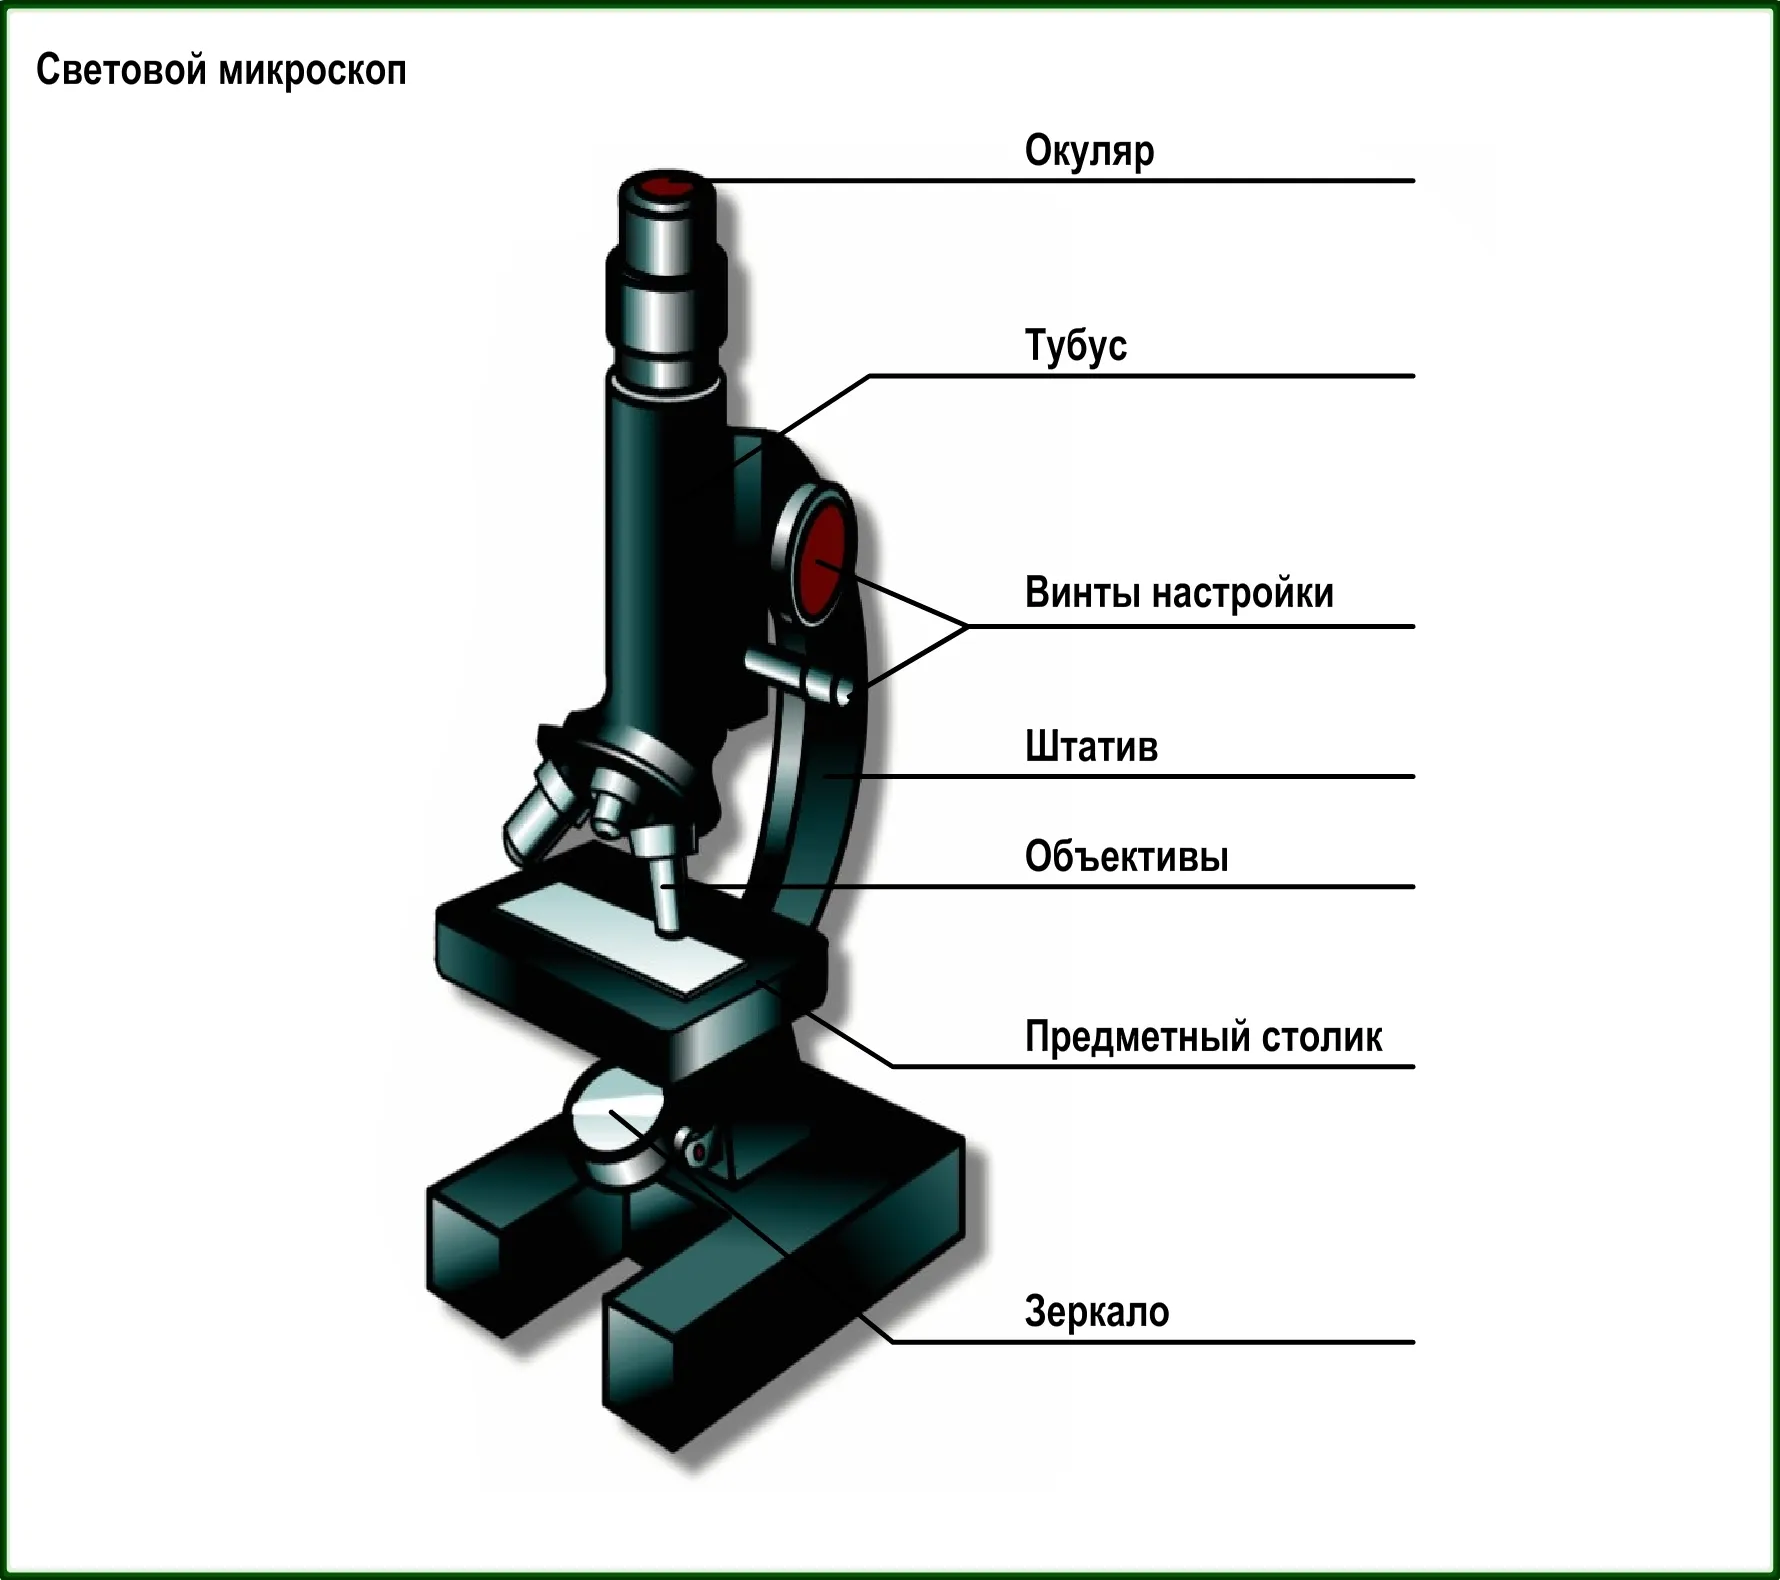 Строение цифрового микроскопа 5. Цифровой микроскоп строение 5 класс. Строение микроскопа 5 класс. Строение светового микроскопа 5 класс. Части микроскопа и их названия и функции